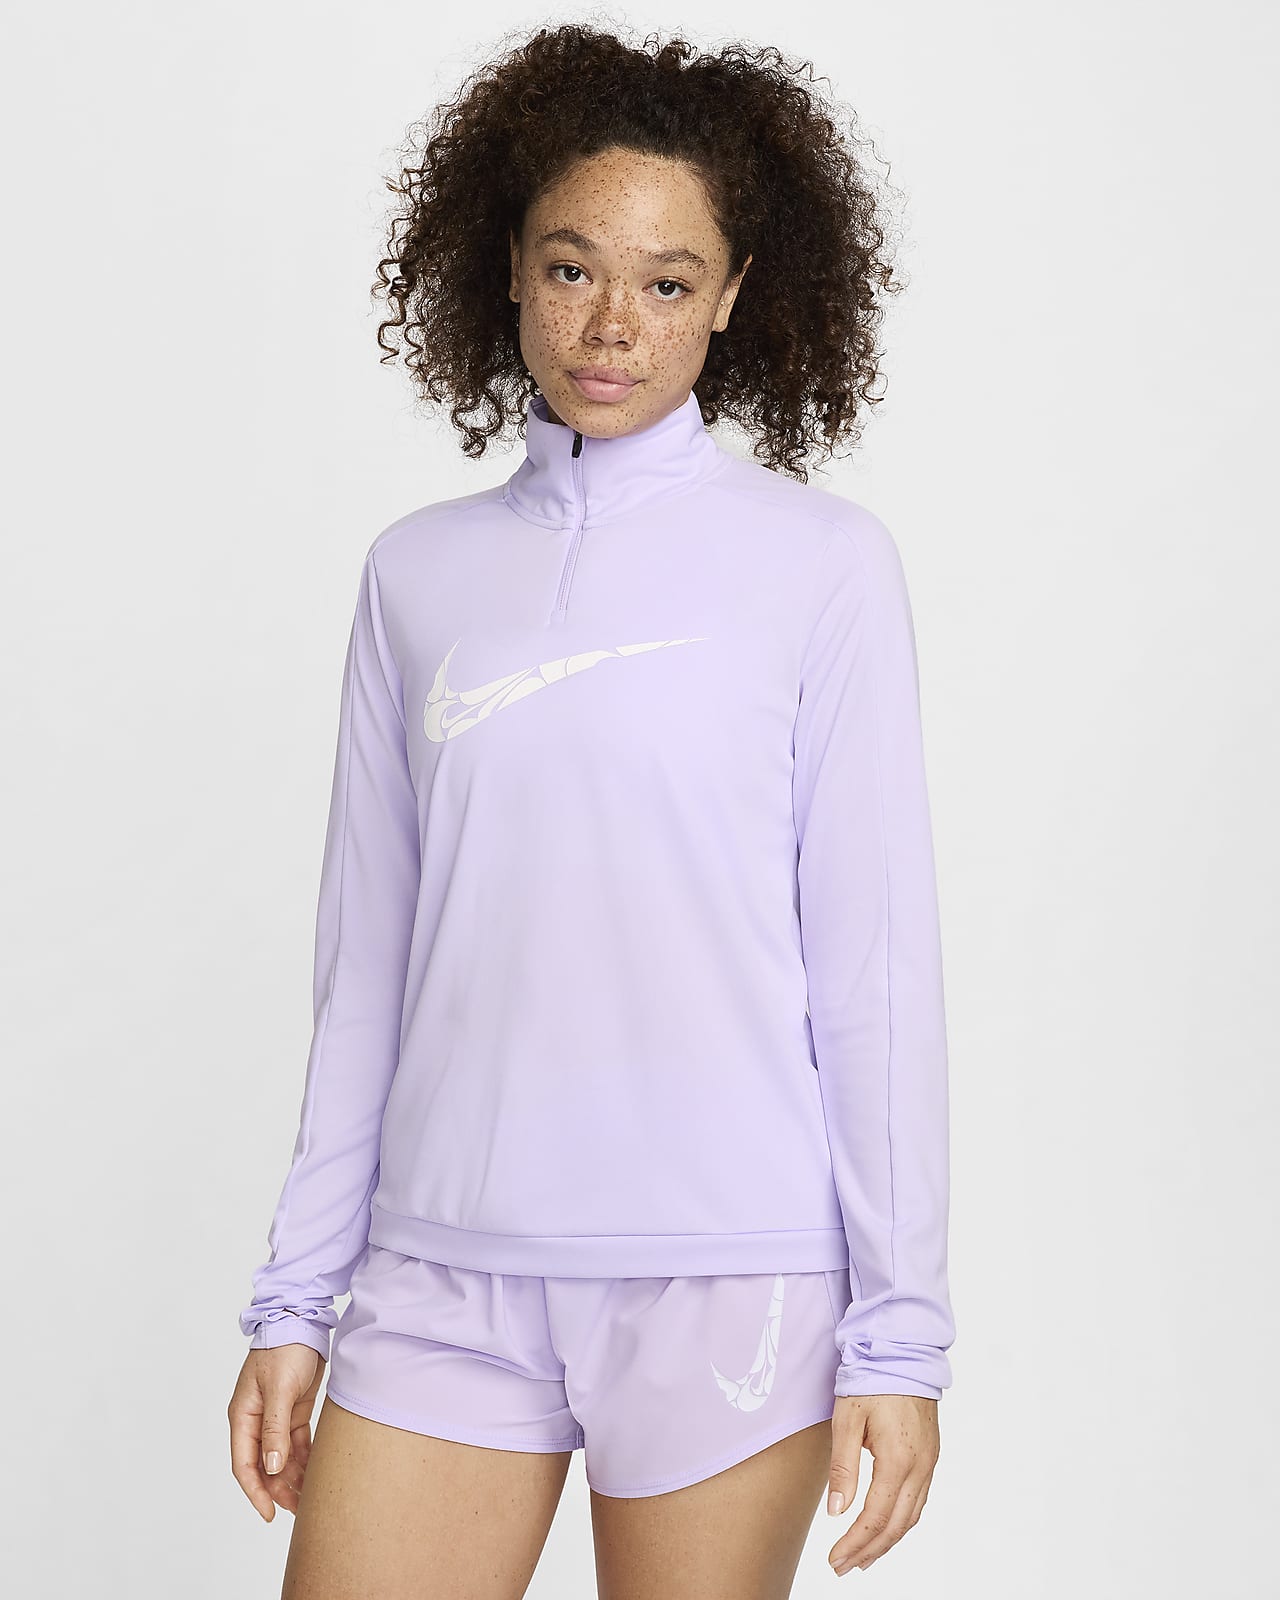 Vêtement deuxième couche Dri-FIT à 1/4 de zip Nike Swoosh pour femme